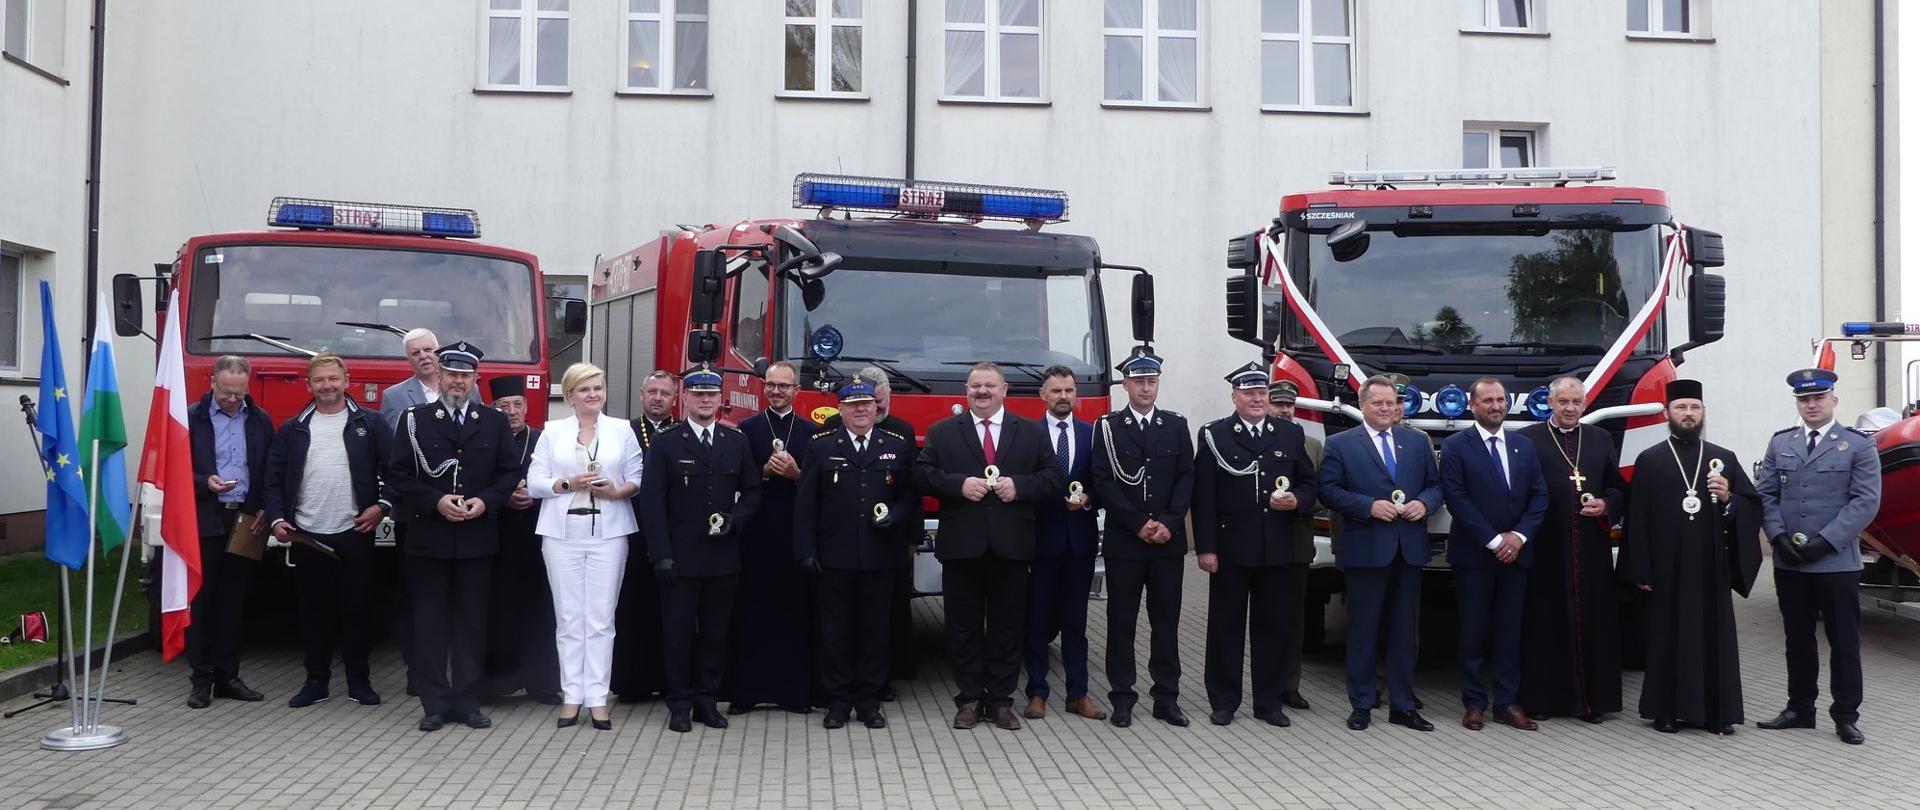 Nowe samochody pożarnicze dla jednostek OSP w Siemianówce i Olchówce 